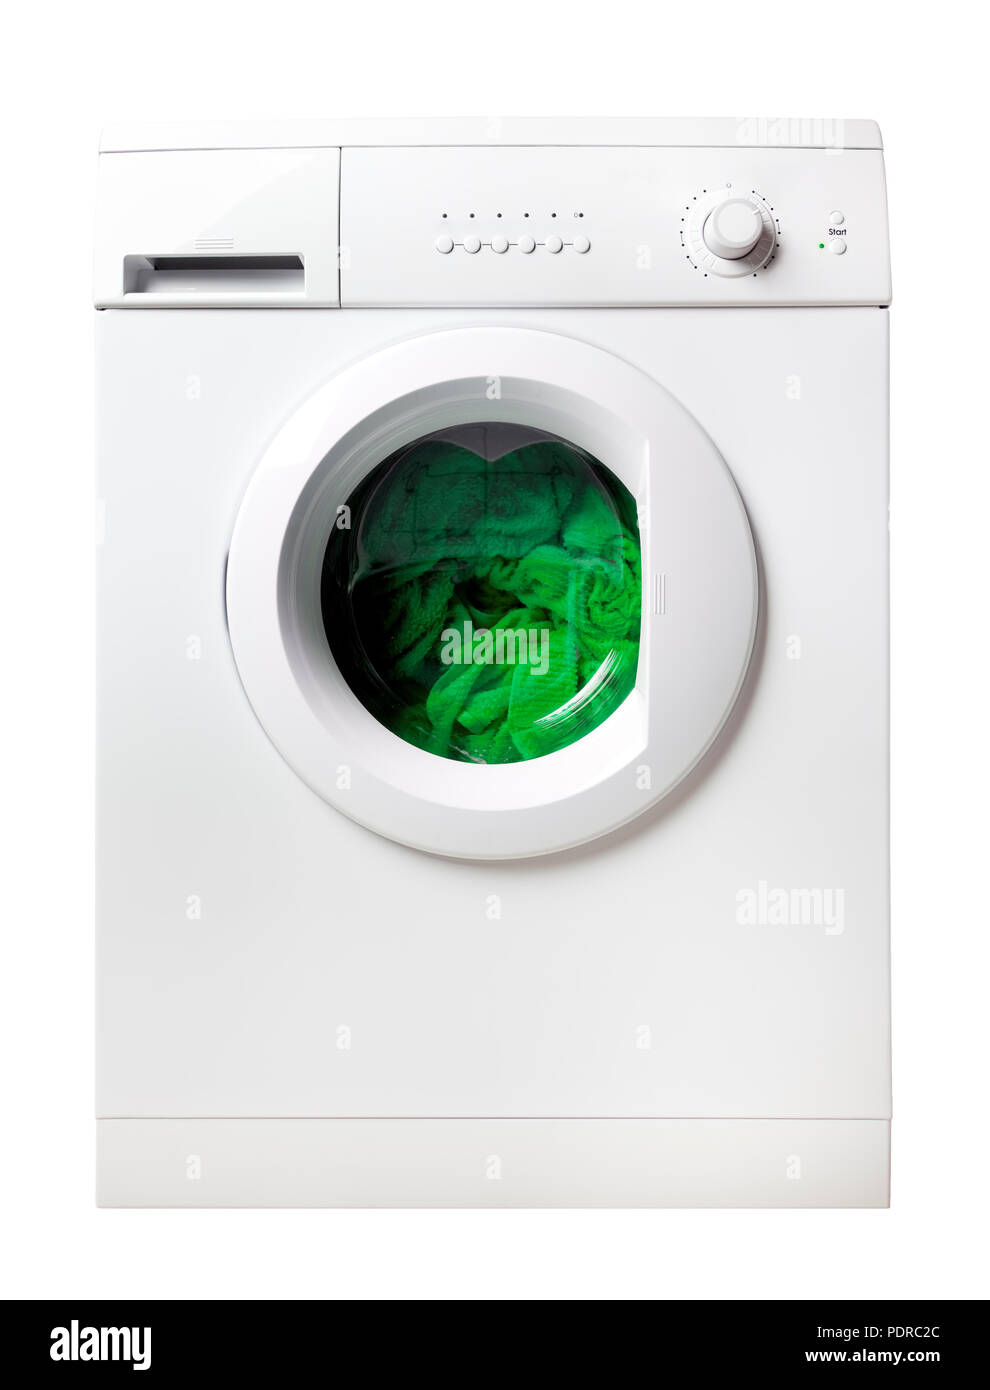 green laundry inside washing machine, isolated on white Stock Photo